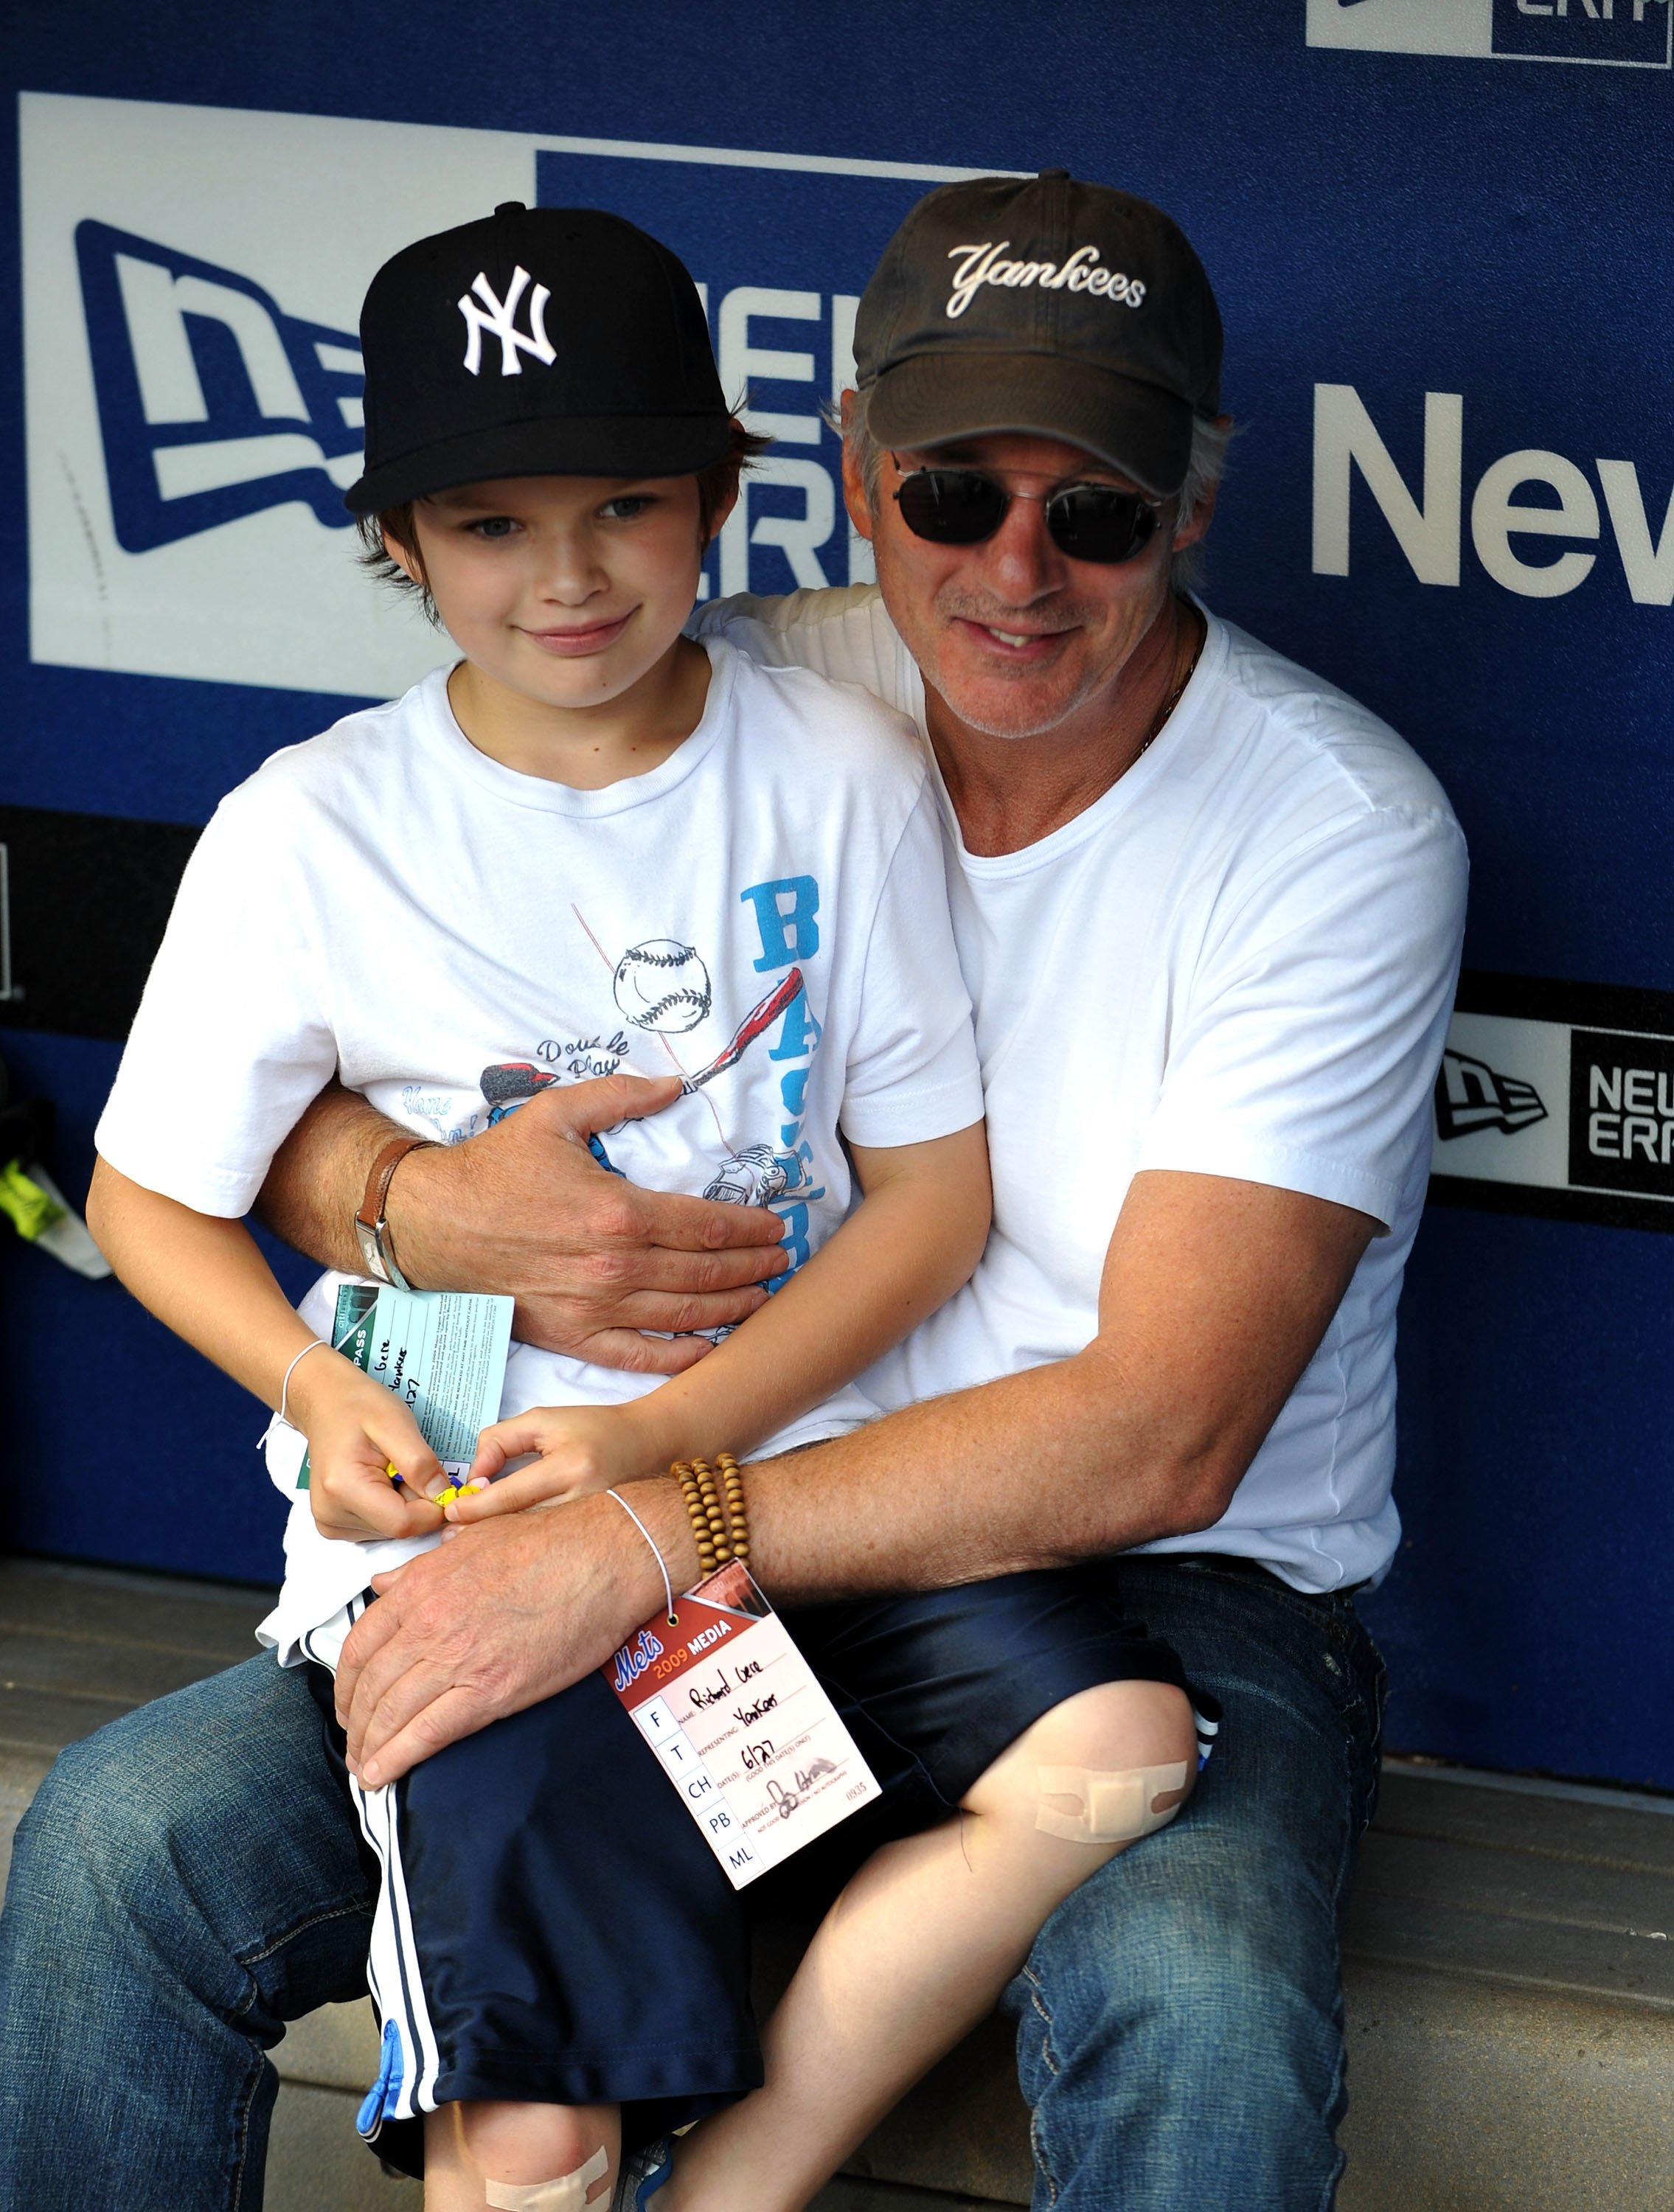 Schauspieler Richard Gere und sein Sohn Homer beim Spiel der New York Subway Series zwischen den Mets und den Yannkees im Citi Field am 26. Juni 2009 in New York, New York. | Quelle: Getty Images